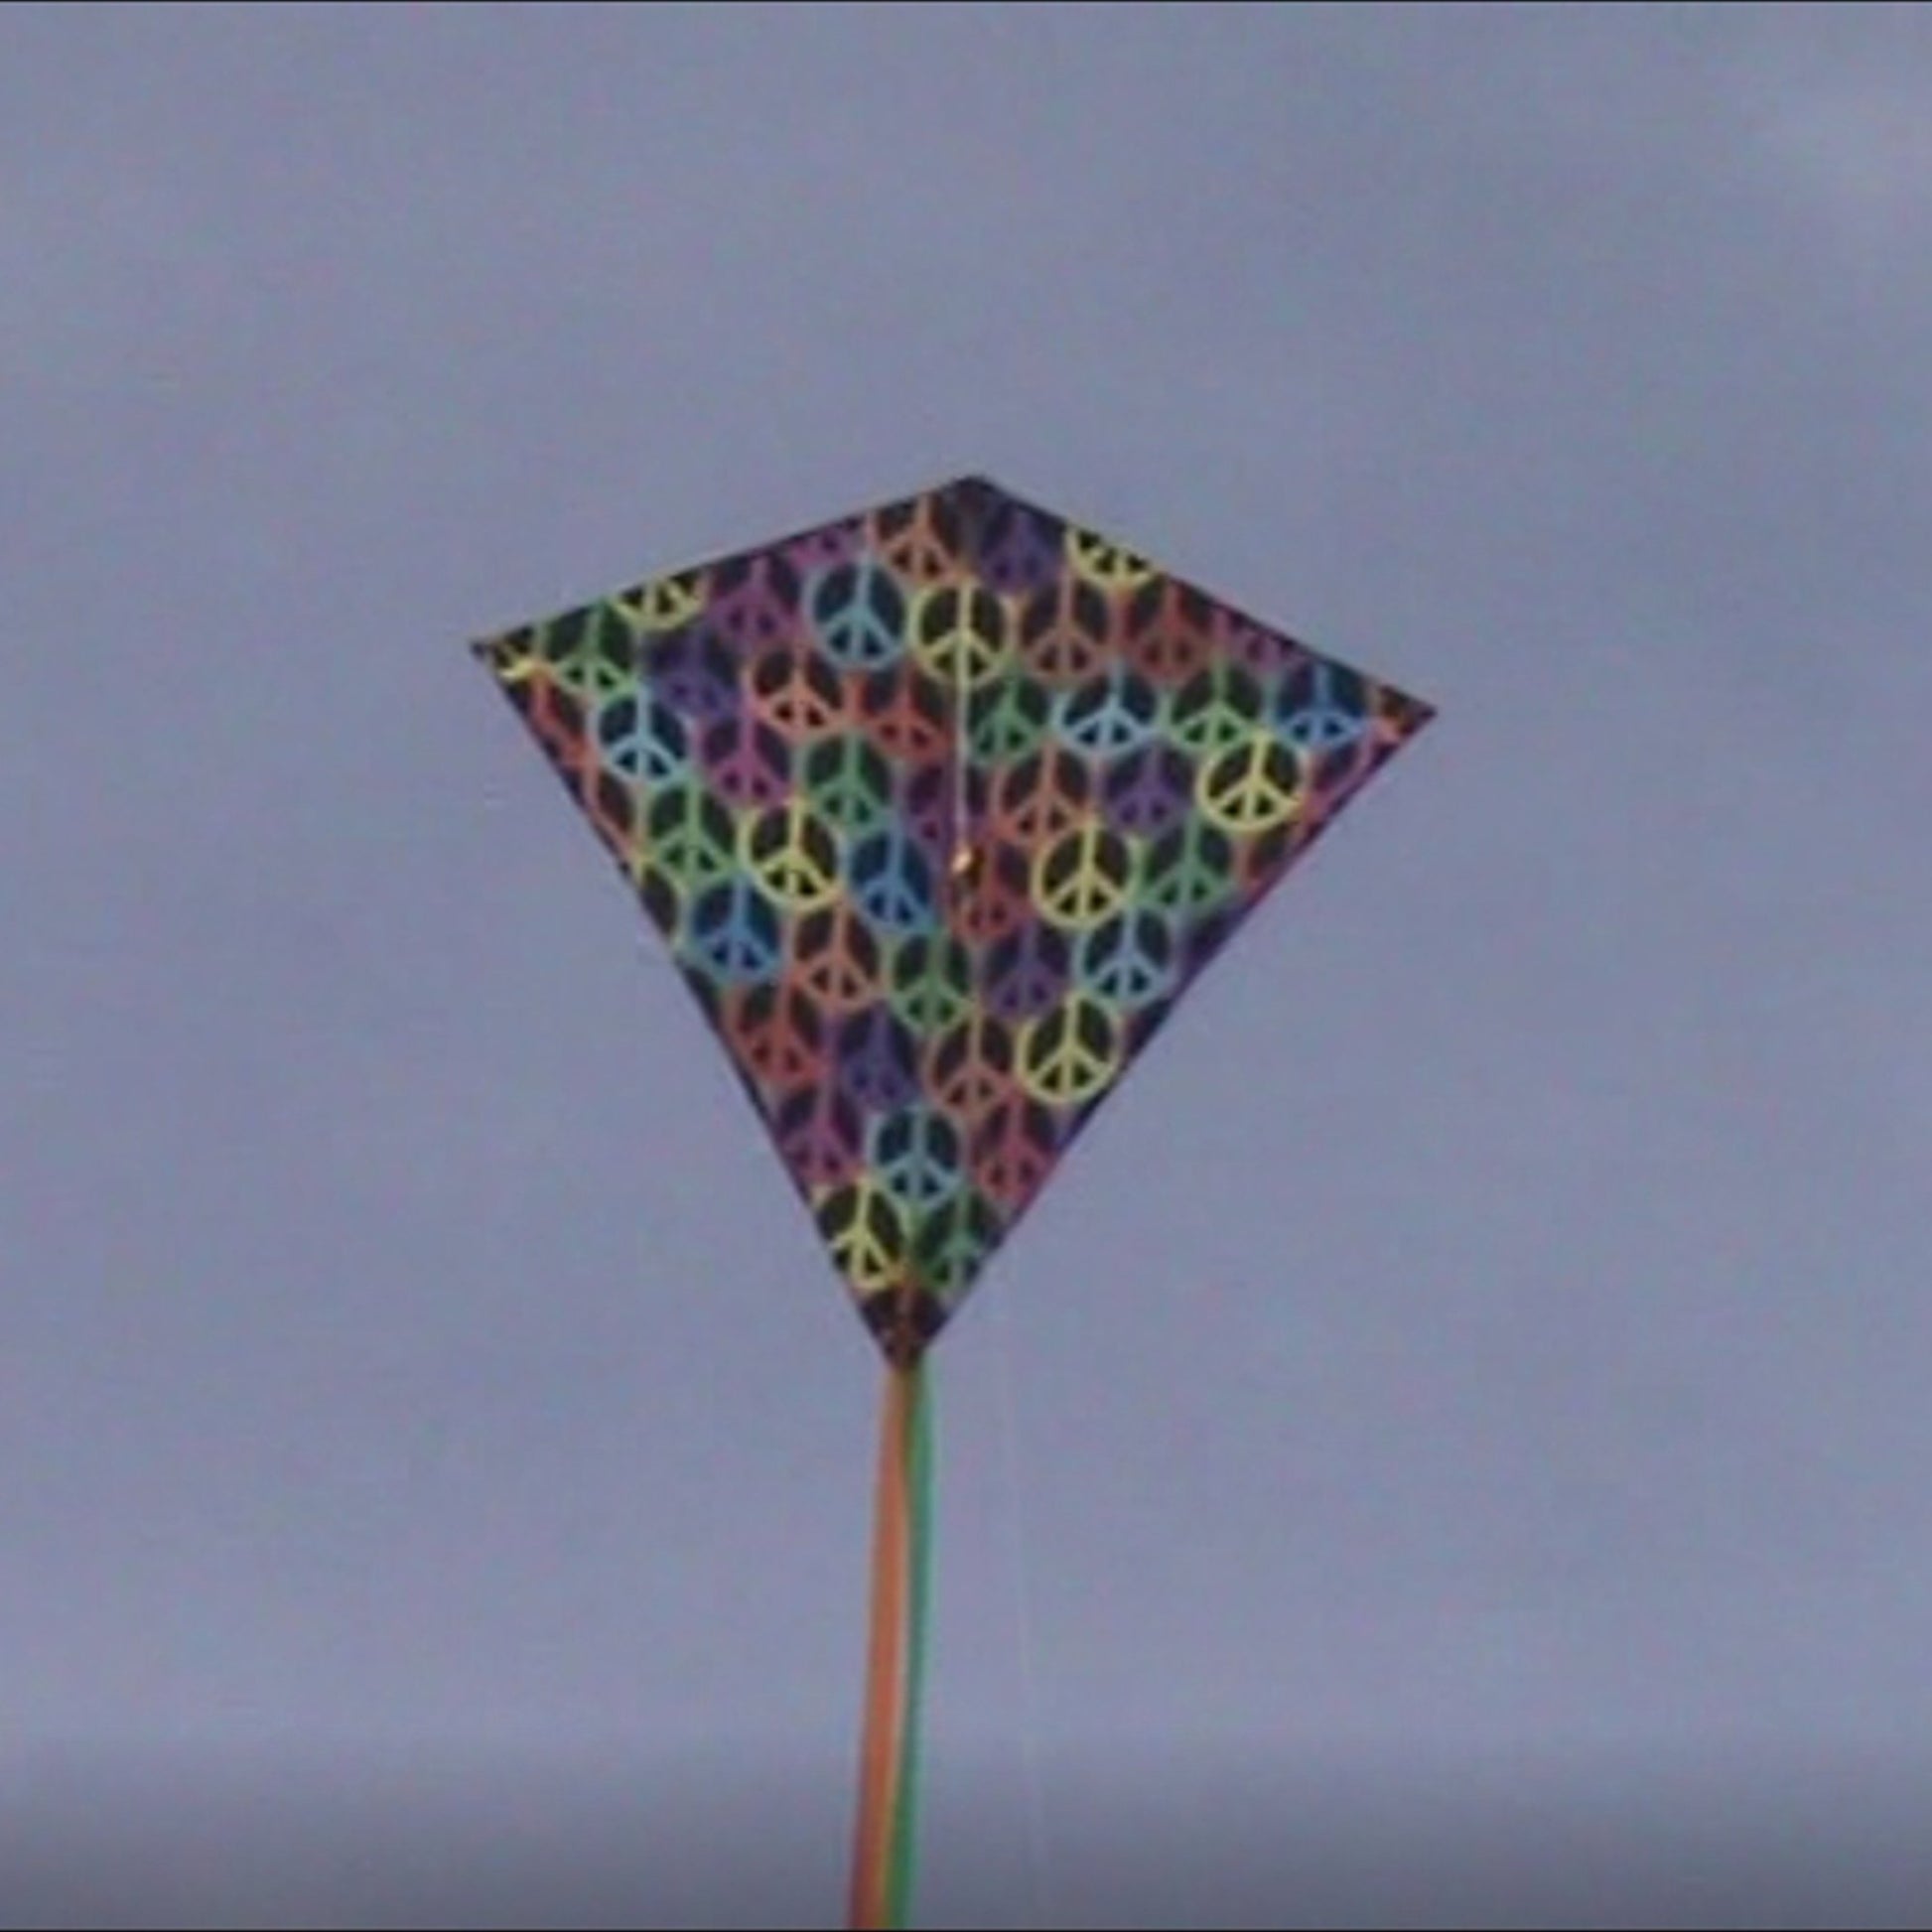 windnsun winddiamond peace nylon kite flying